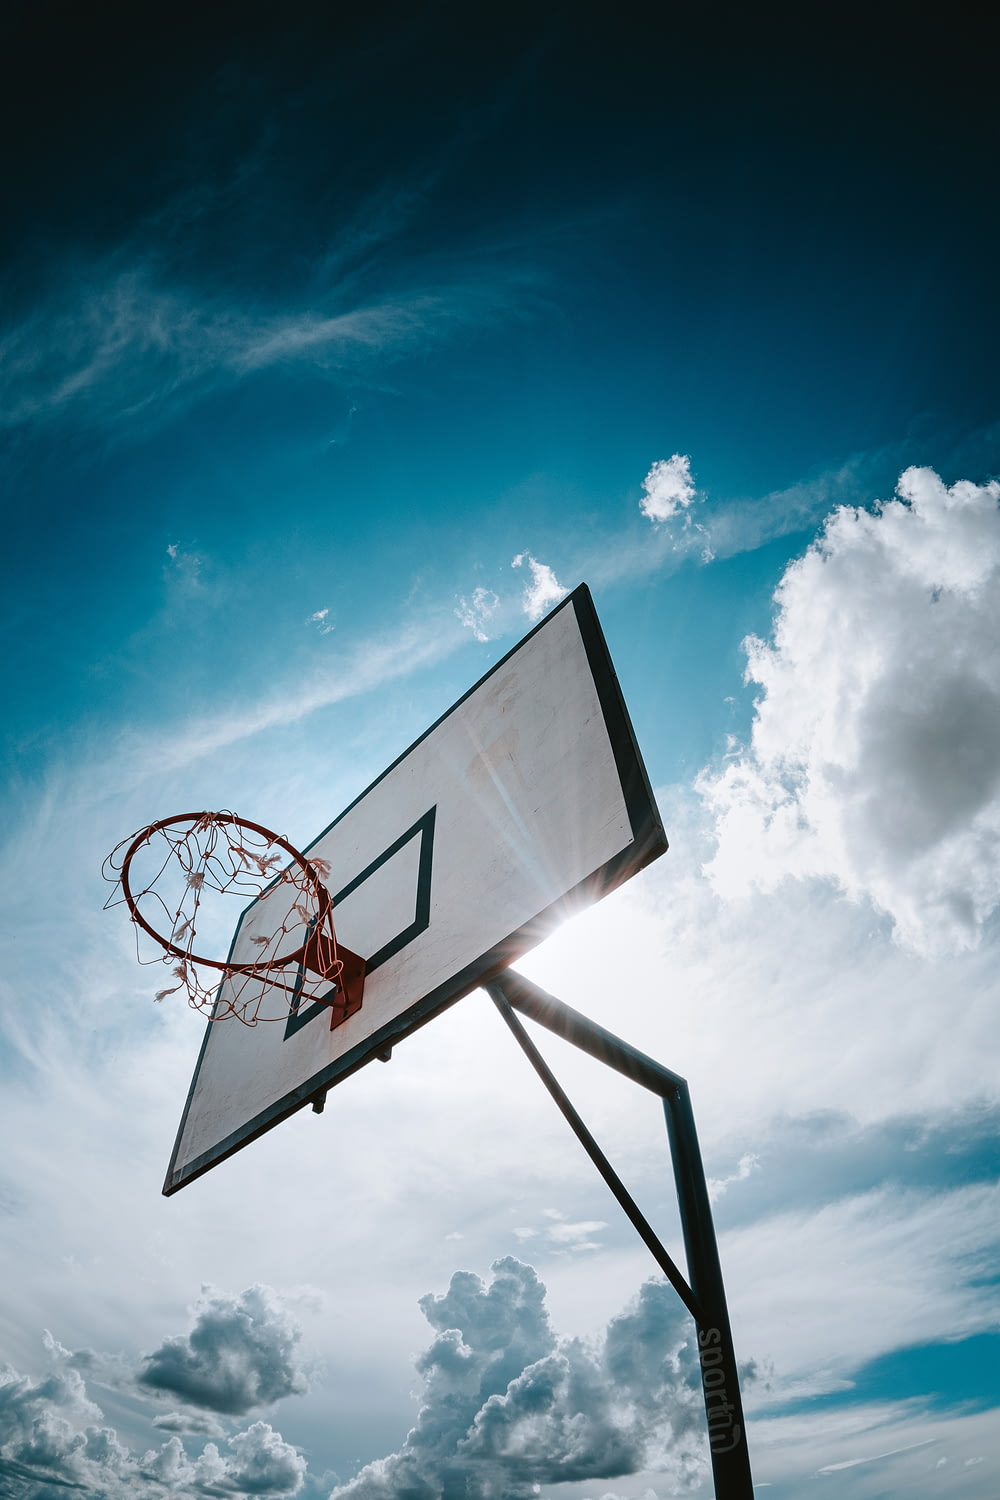 basketball hoop under blue sky during daytime